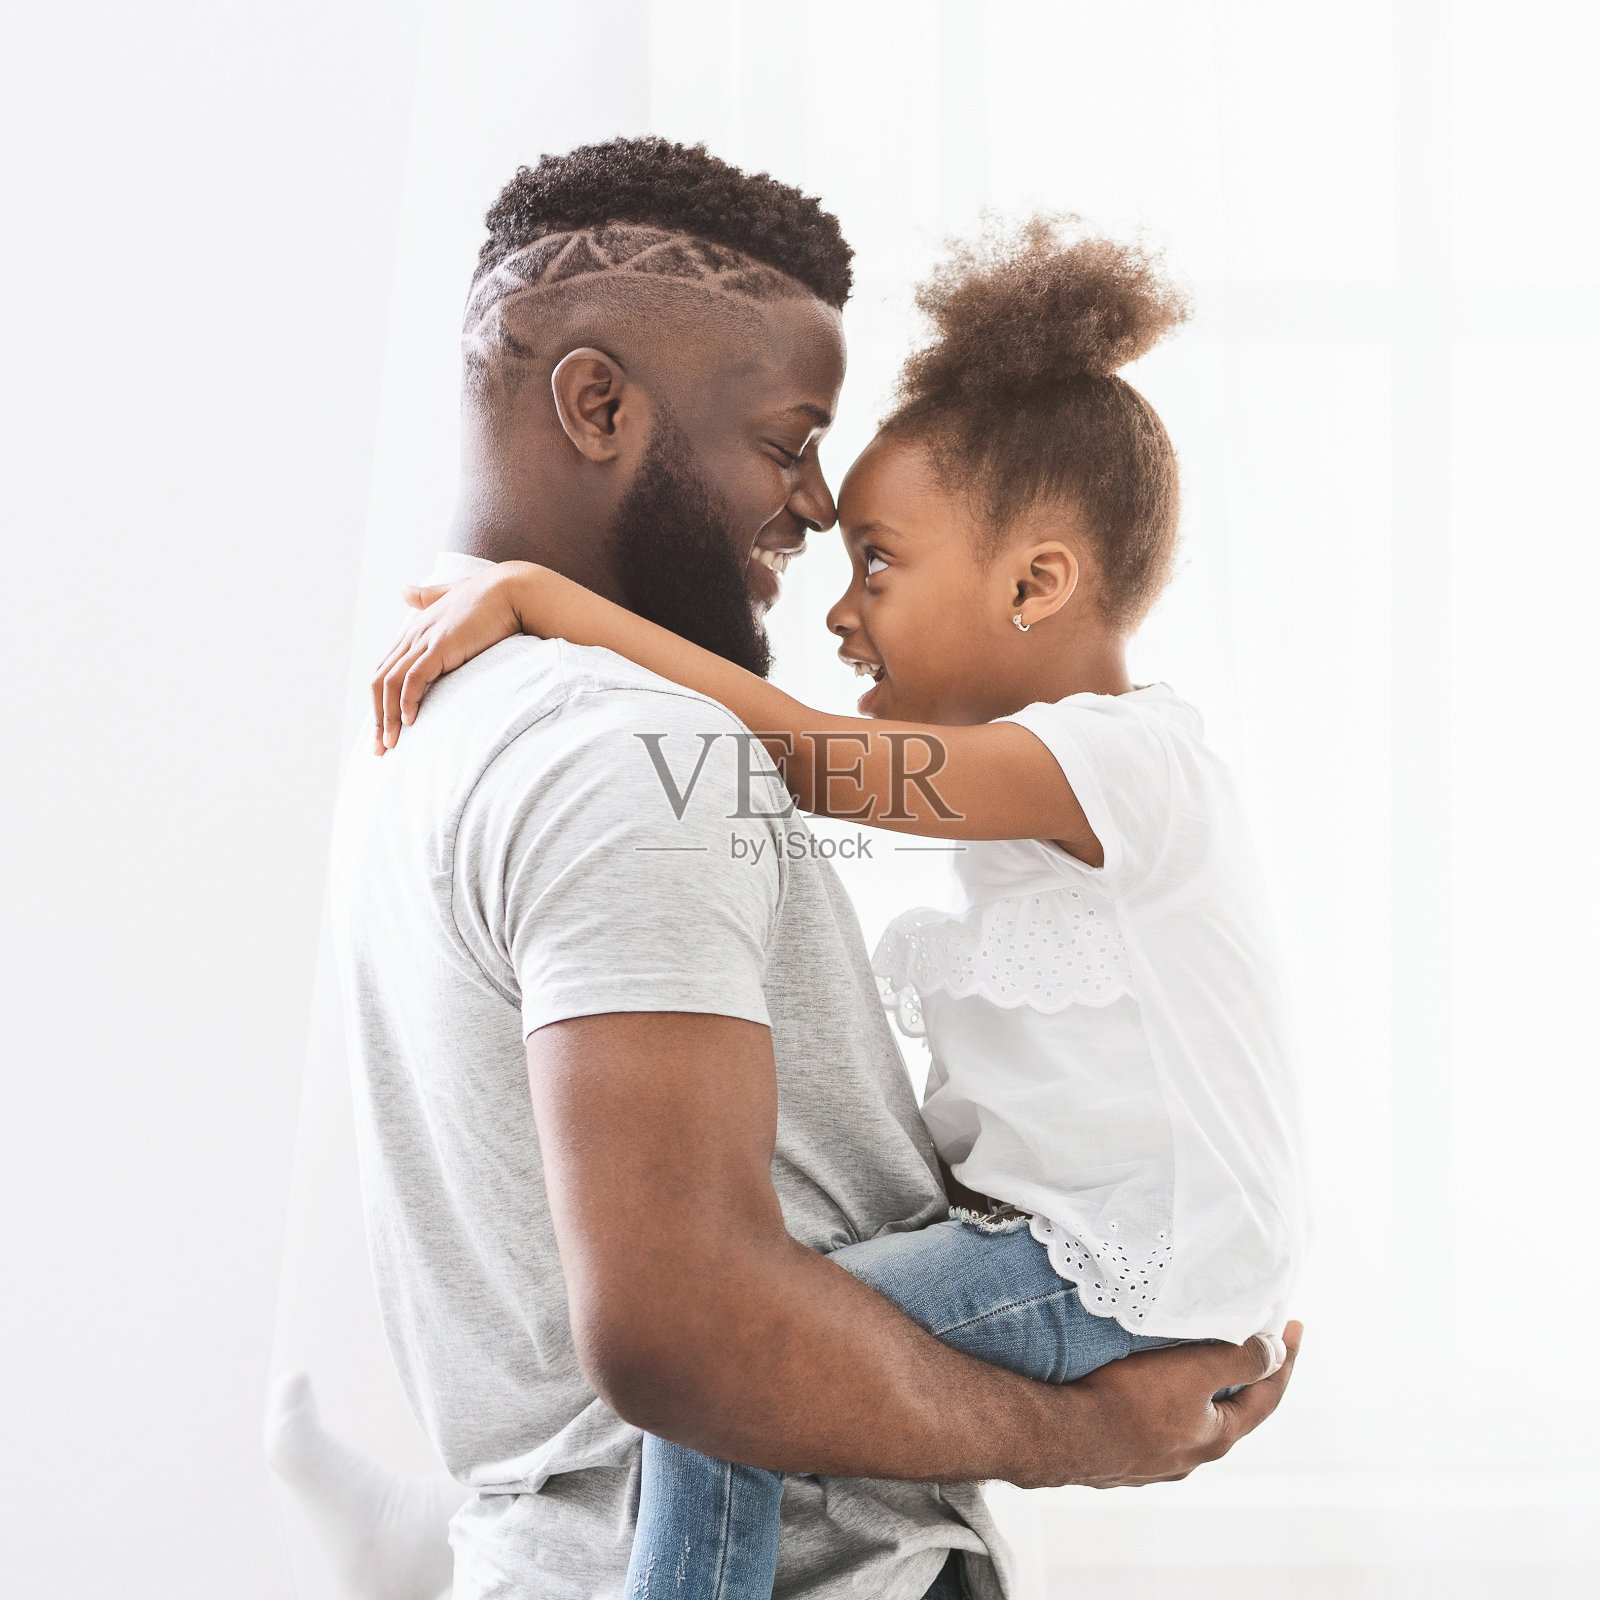 黑人父亲和女儿在白人之上的亲密关系照片摄影图片